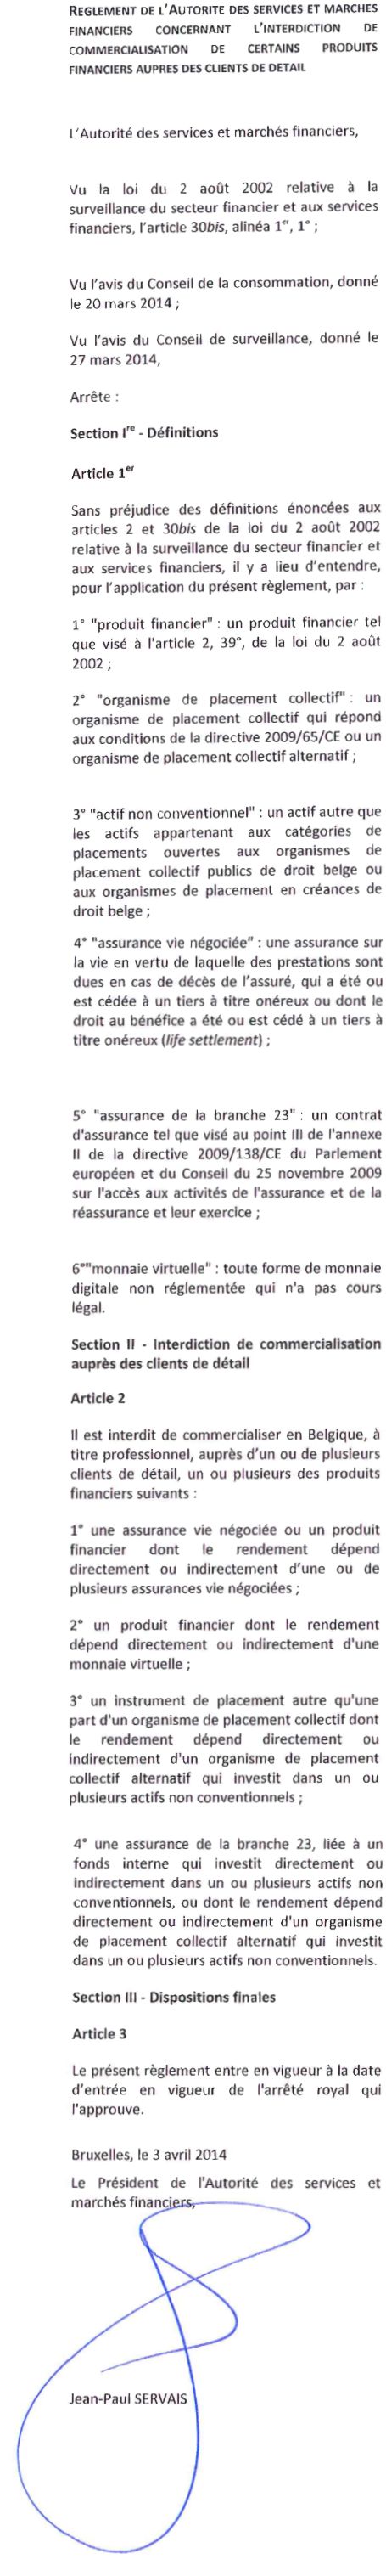 reglement_de_l_Autorite_des_services_et_marche_financiers_Belge.jpg